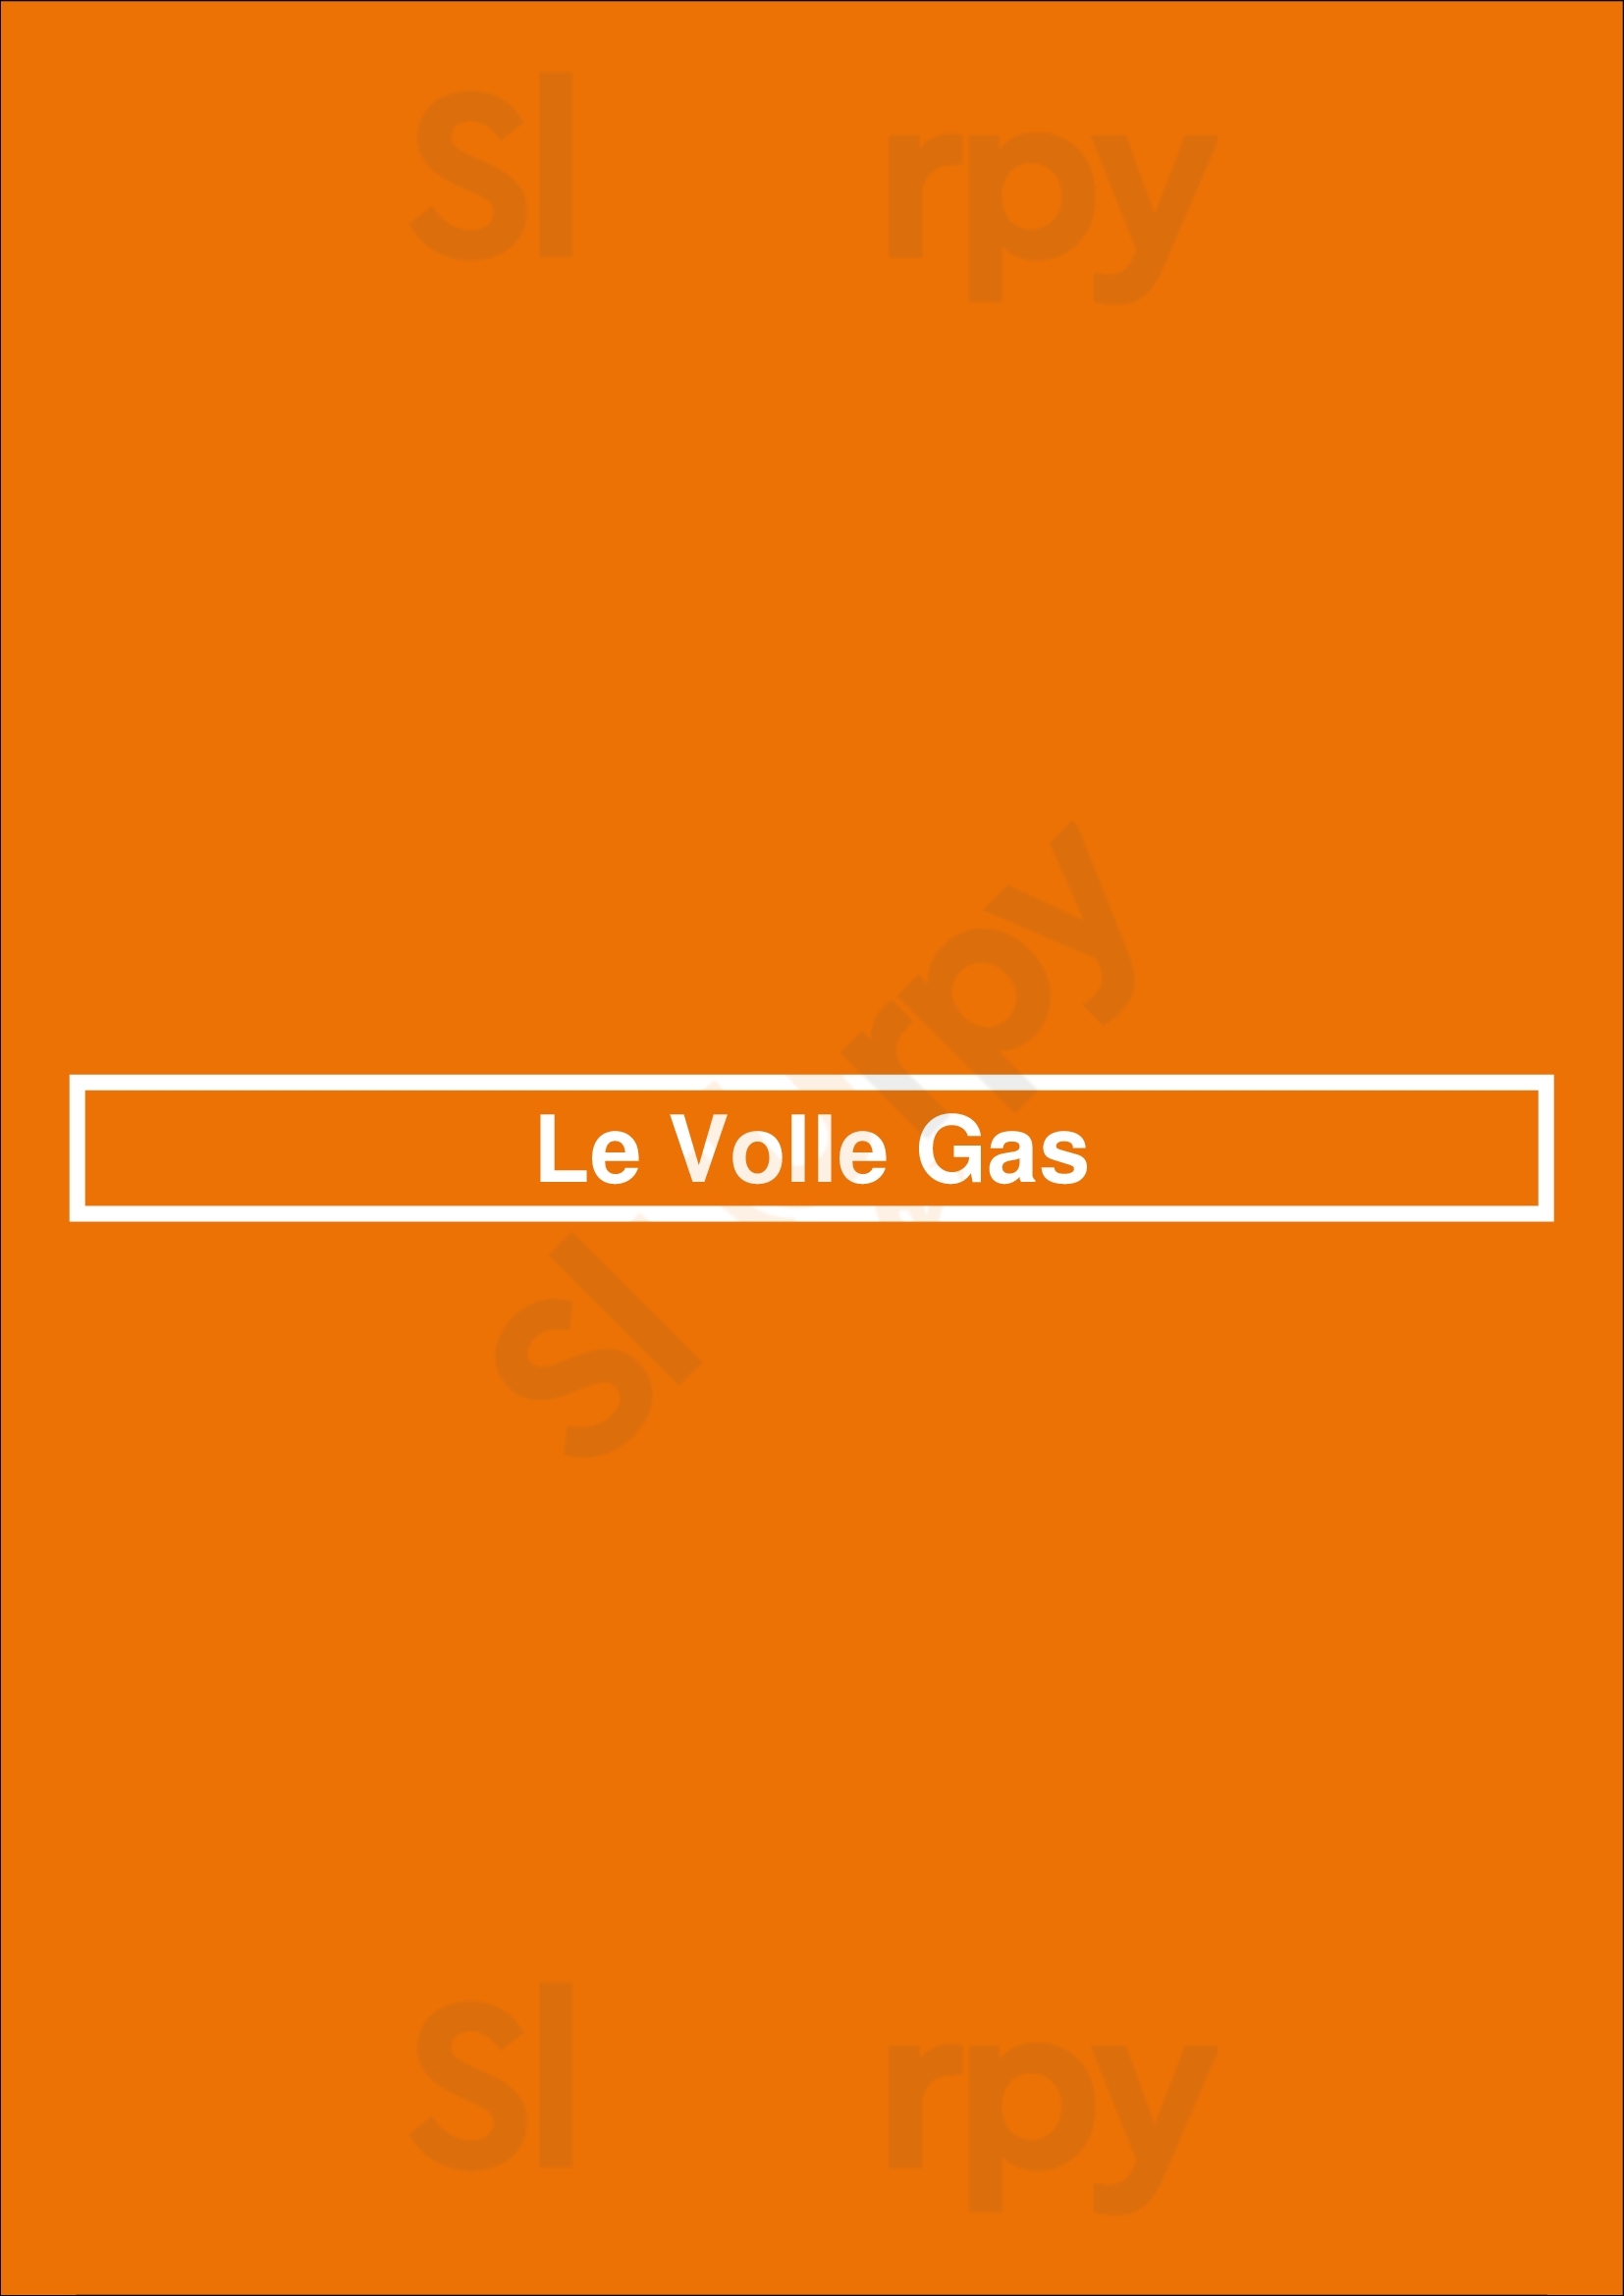 Le Volle Gas Bruxelles Menu - 1